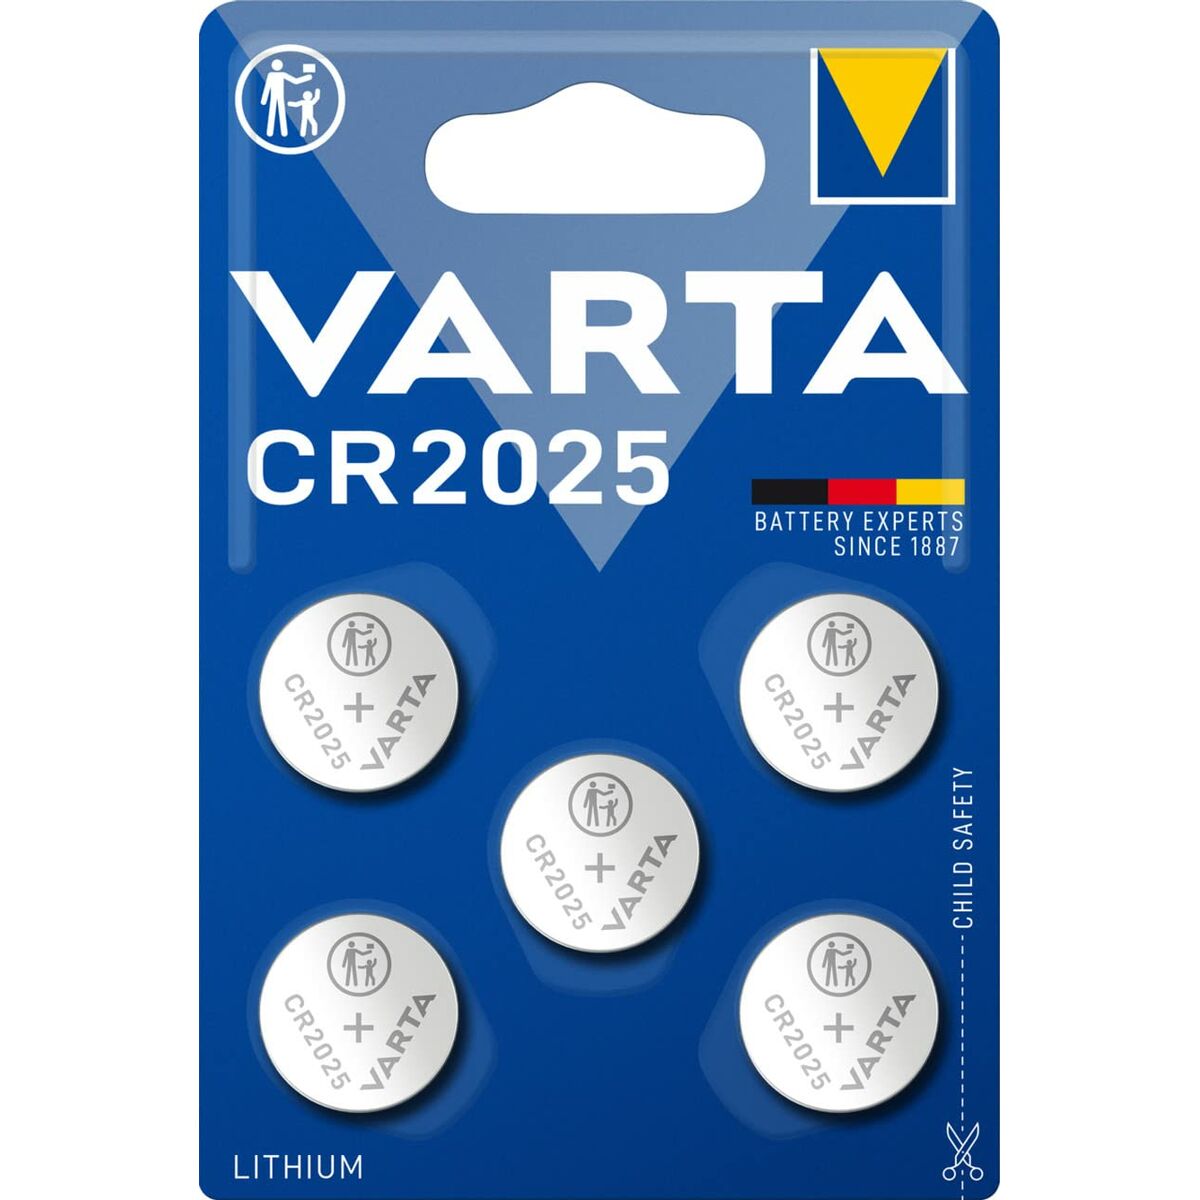 Lithiumknopfzellen Varta 6025101415 CR2025 3 V (5 Stück)